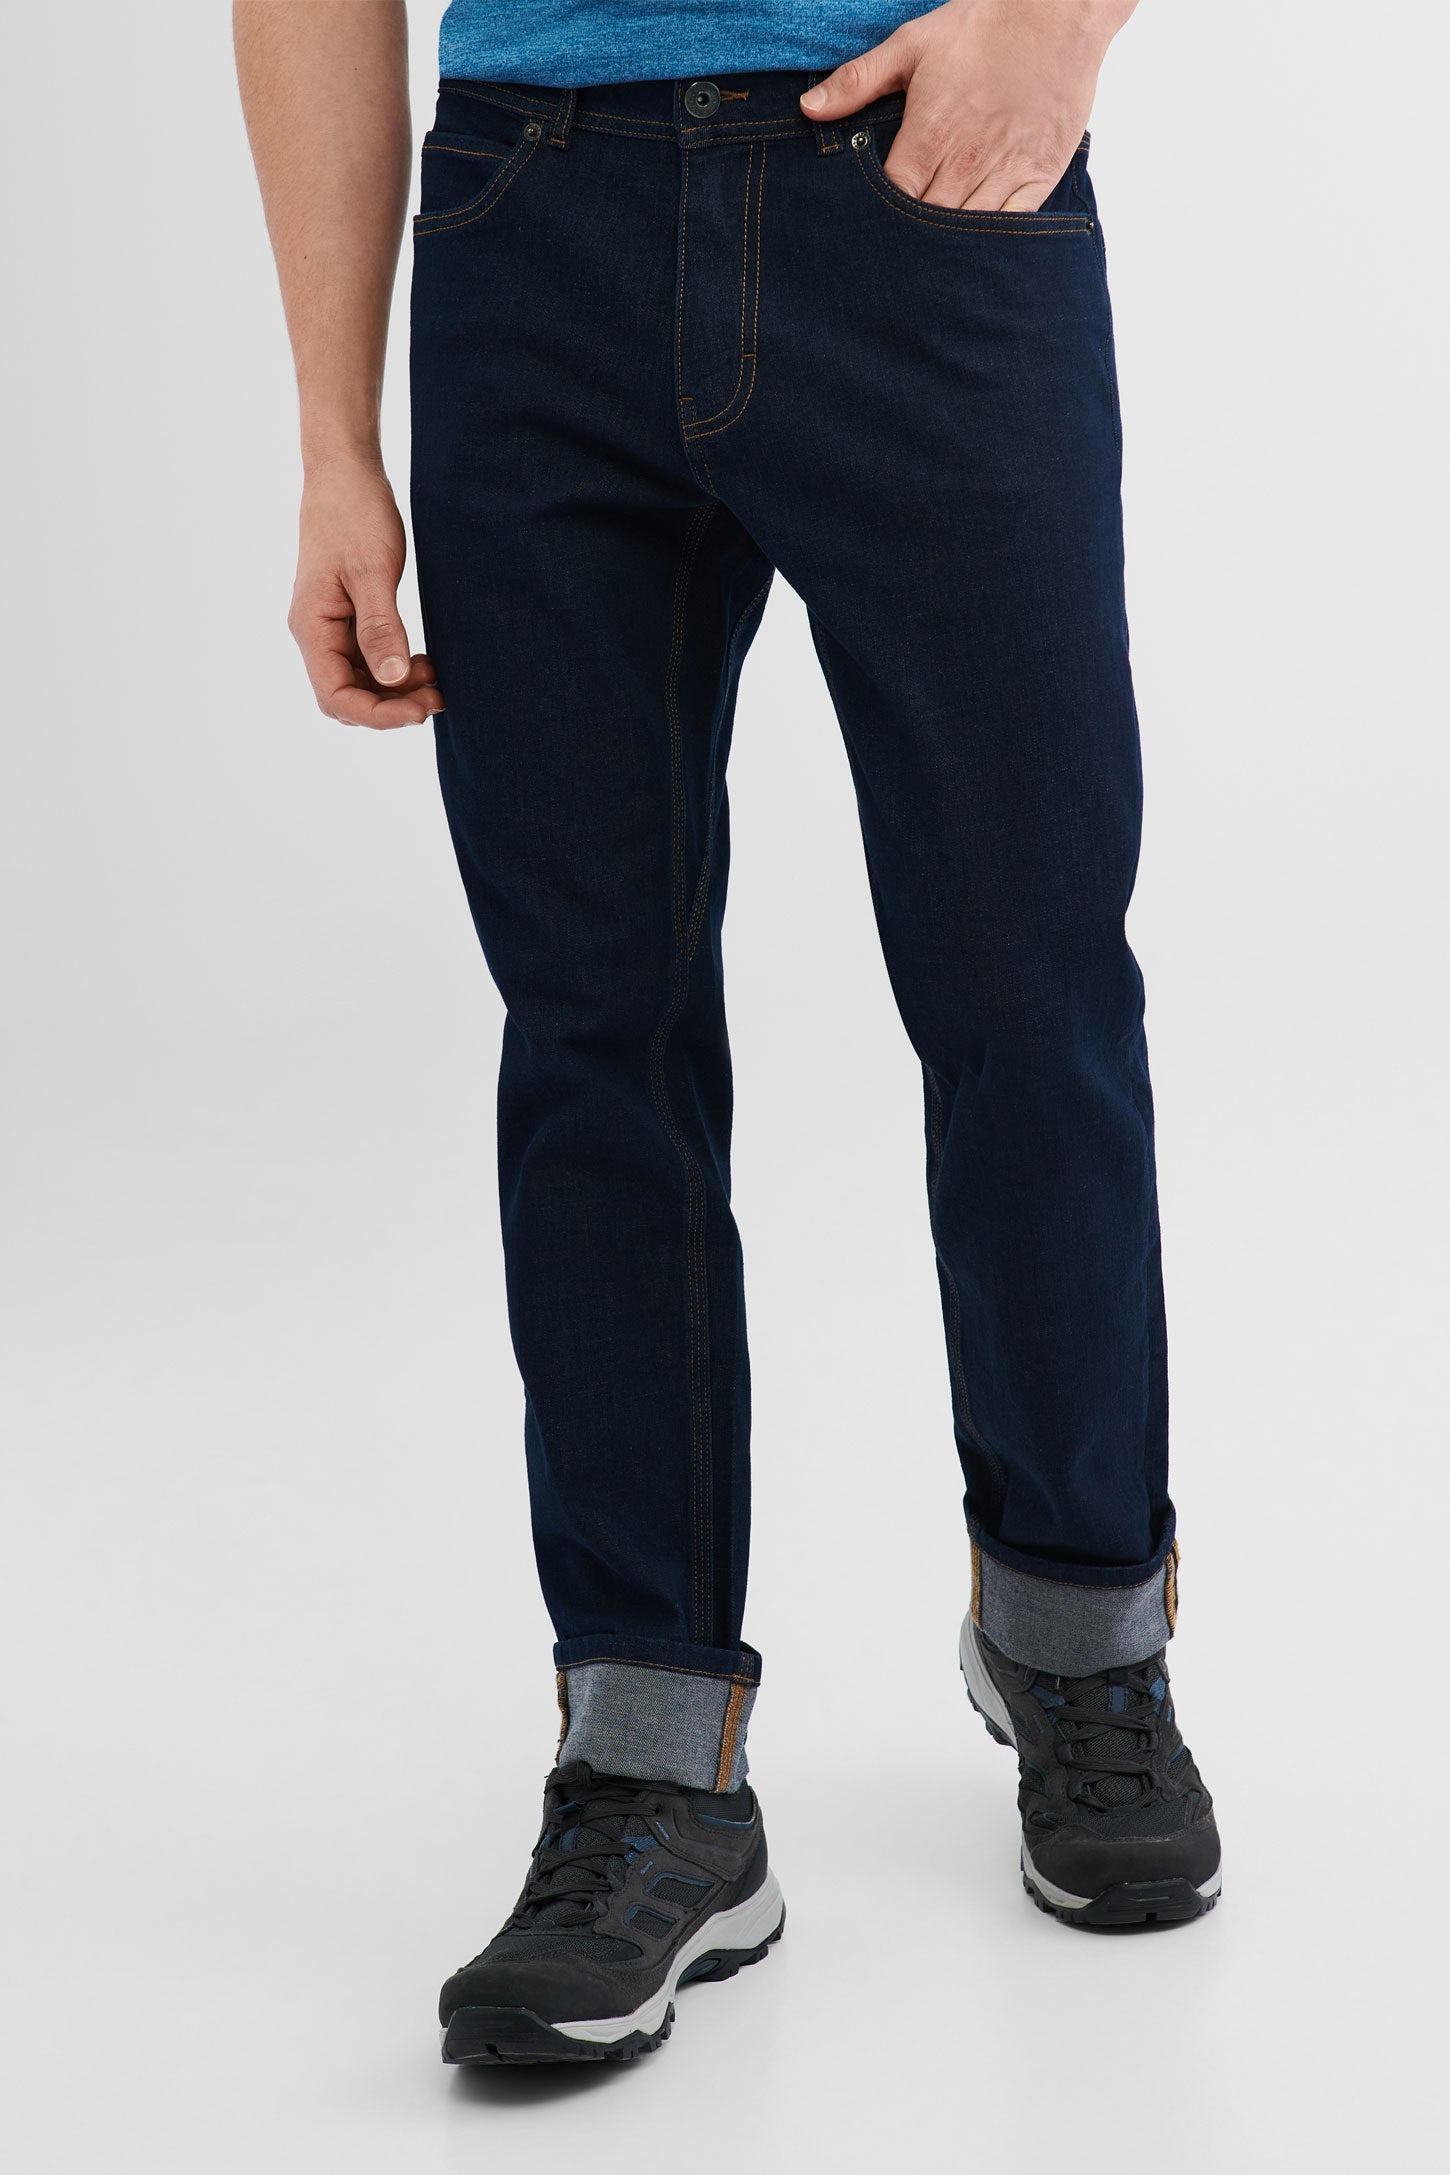 Jeans extensible 4 sens BM - Homme && DENIM FONCE